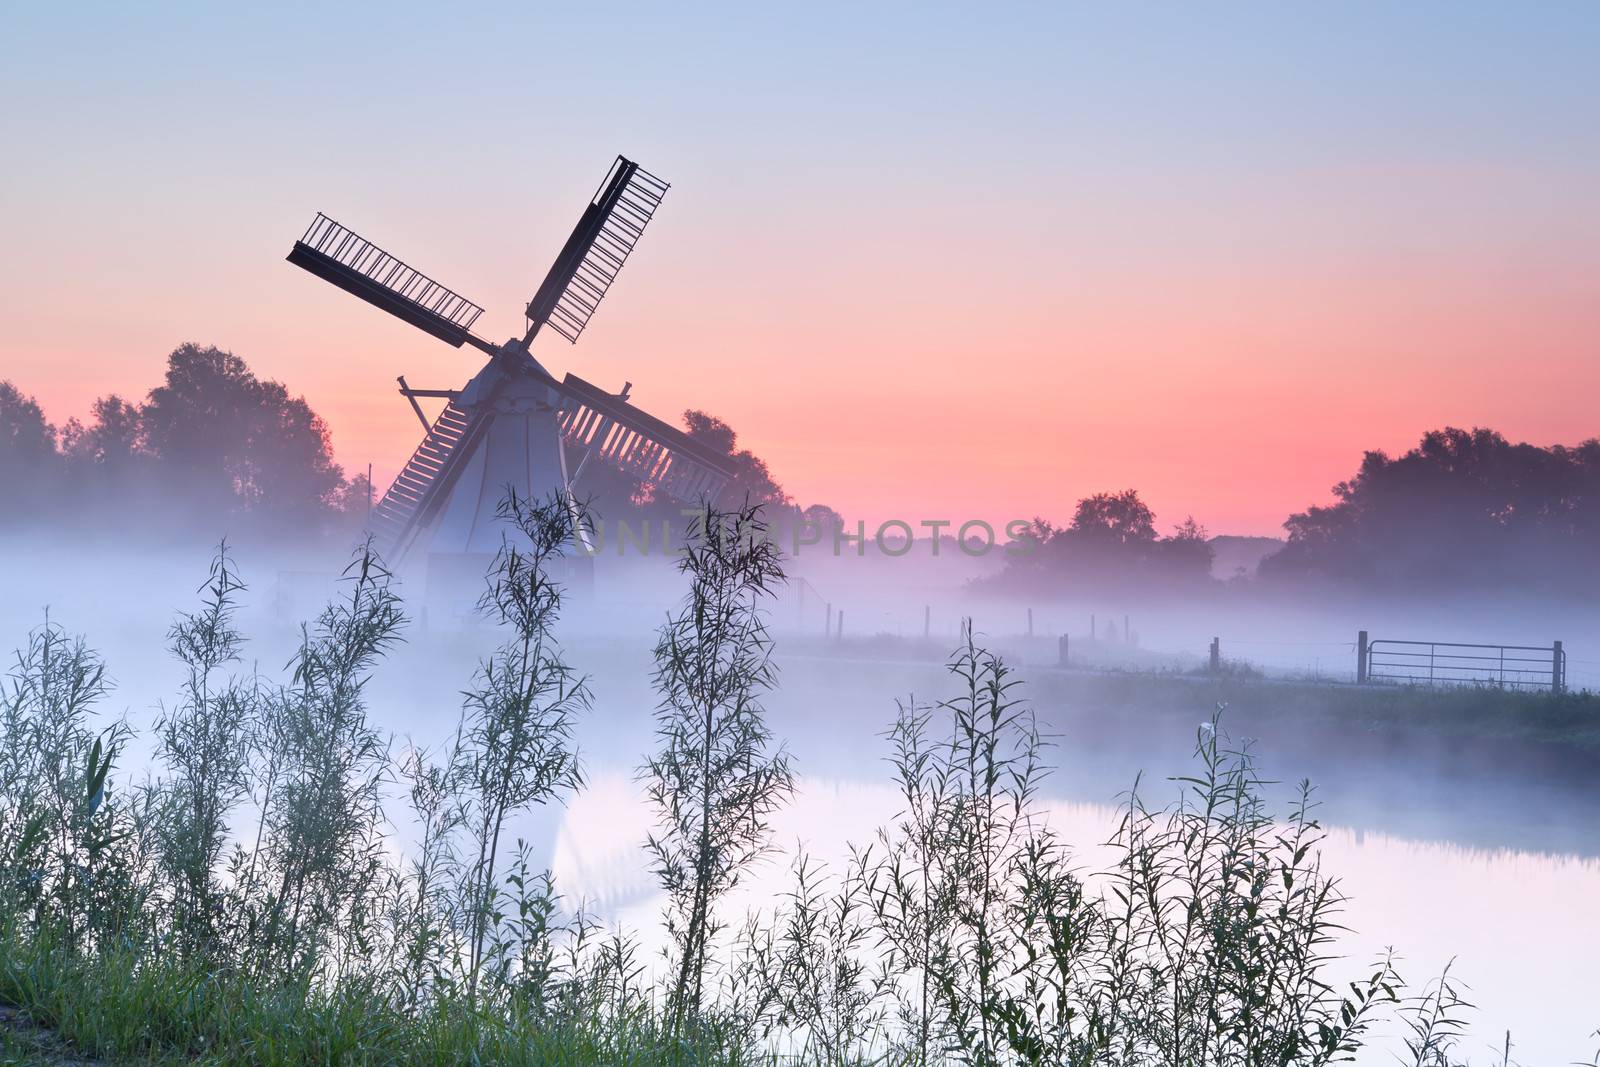 charming Dutch windmill in fog at sunrise